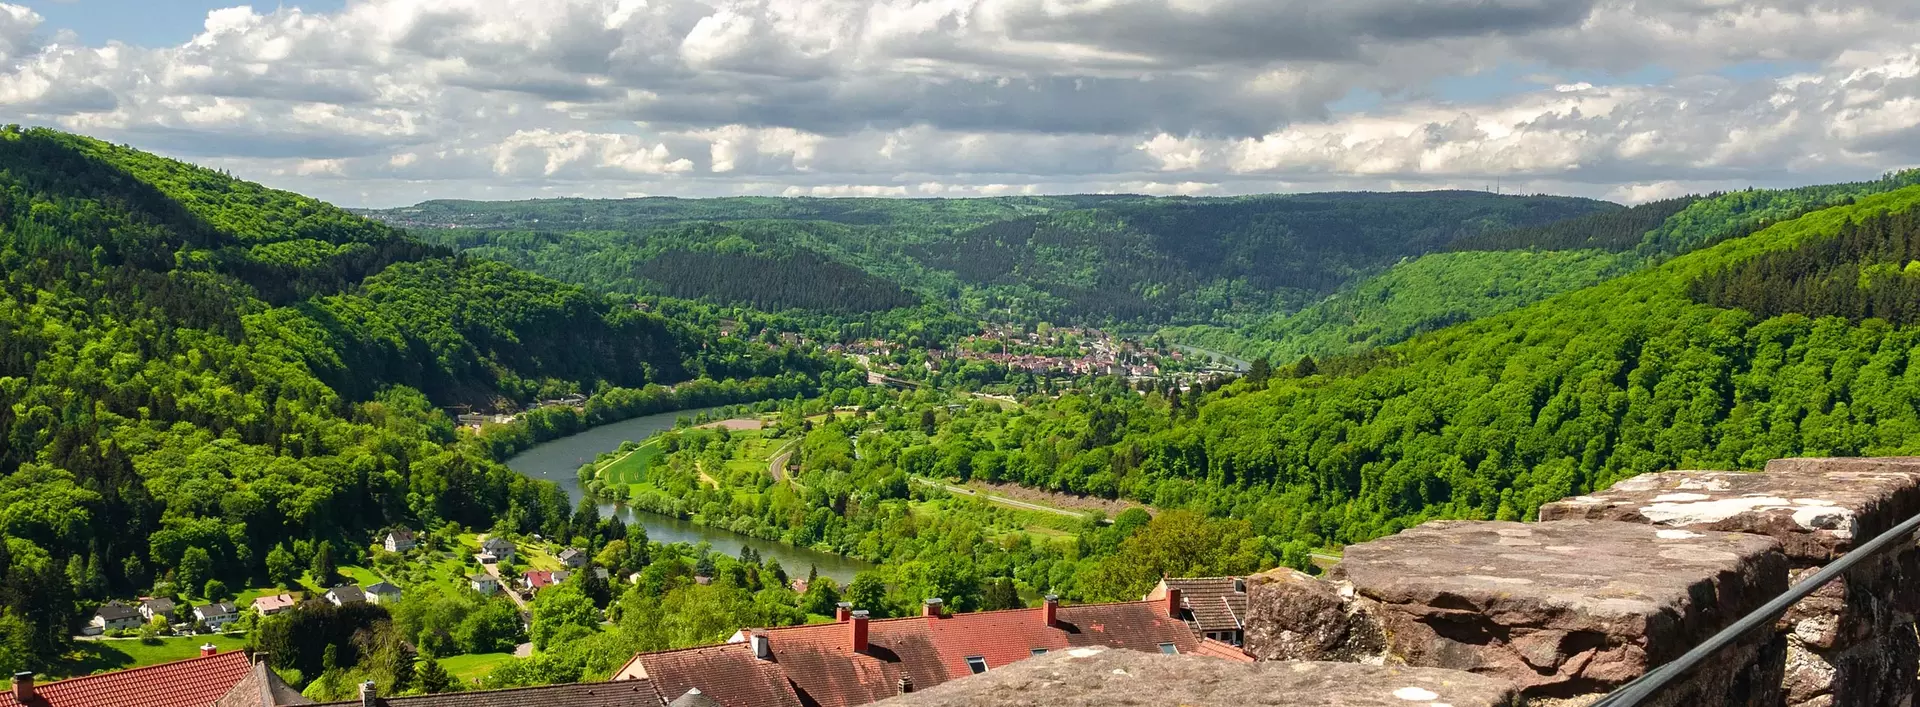 im Urlaub im Odenwald einen Ausflug zur Veste Dilsberg machen und die herrliche Aussicht ins Neckartal genießen